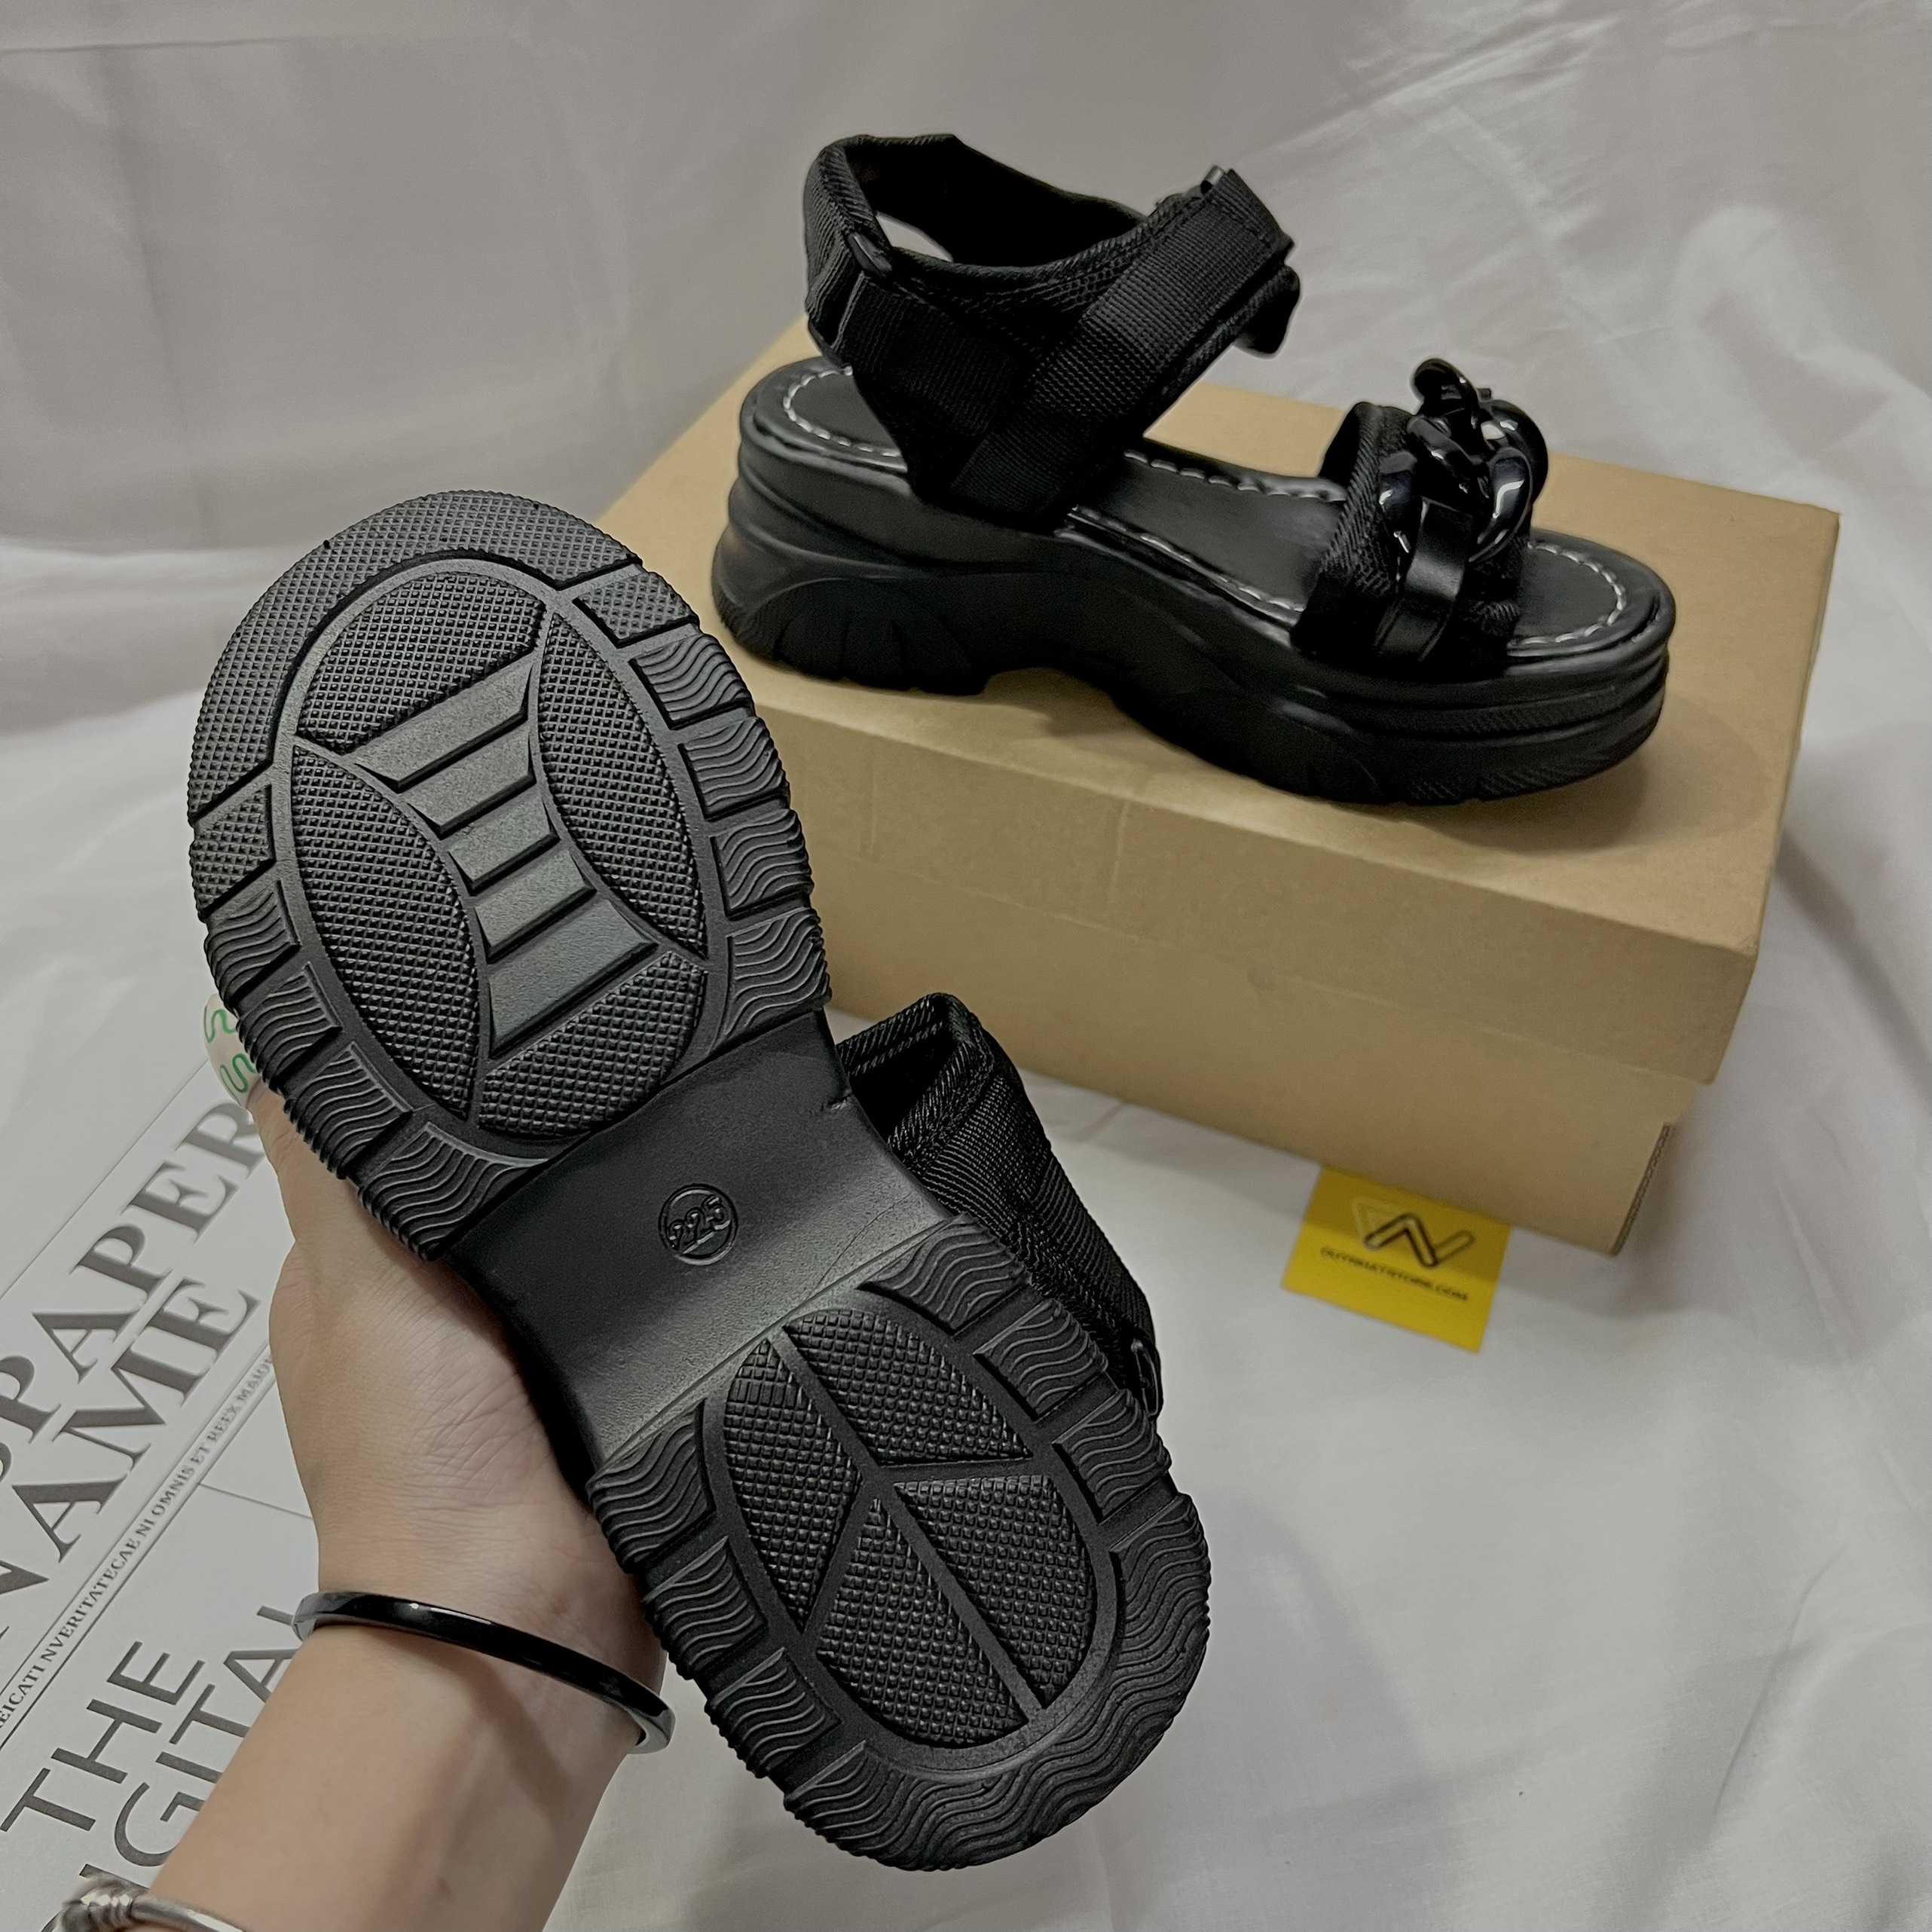 Giày Sandal Nữ Quai Ngang Bánh Mì Màu Trắng Đen Duy Nhật Store Phối Khóa Học Sinh Đi Học Bền Đế Bằng Cao Độn 4cm Uzzang